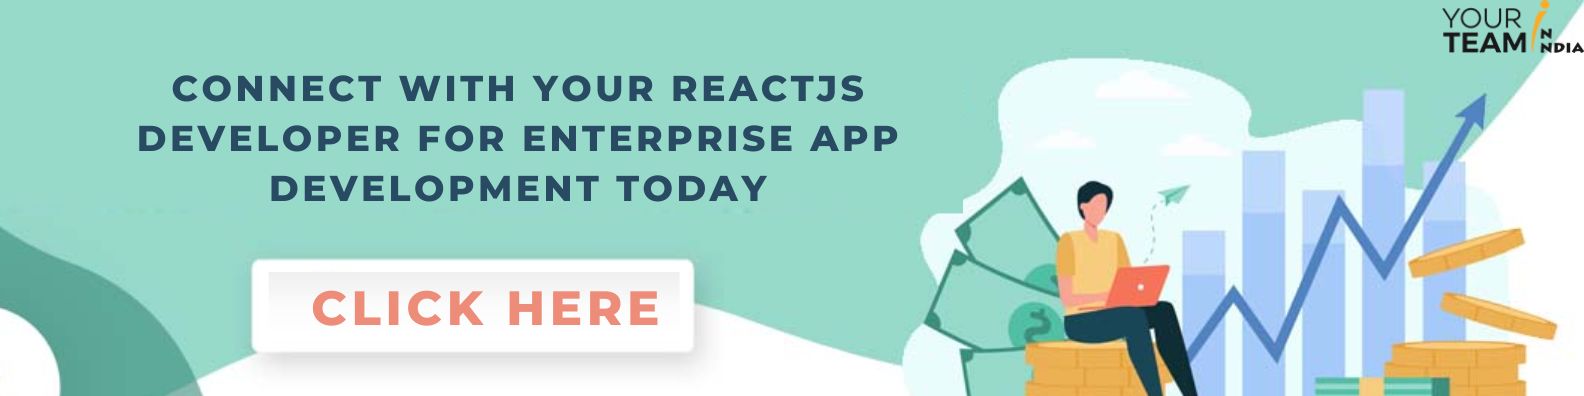 ReactJS Developer for Enterprise App Development - CTA 